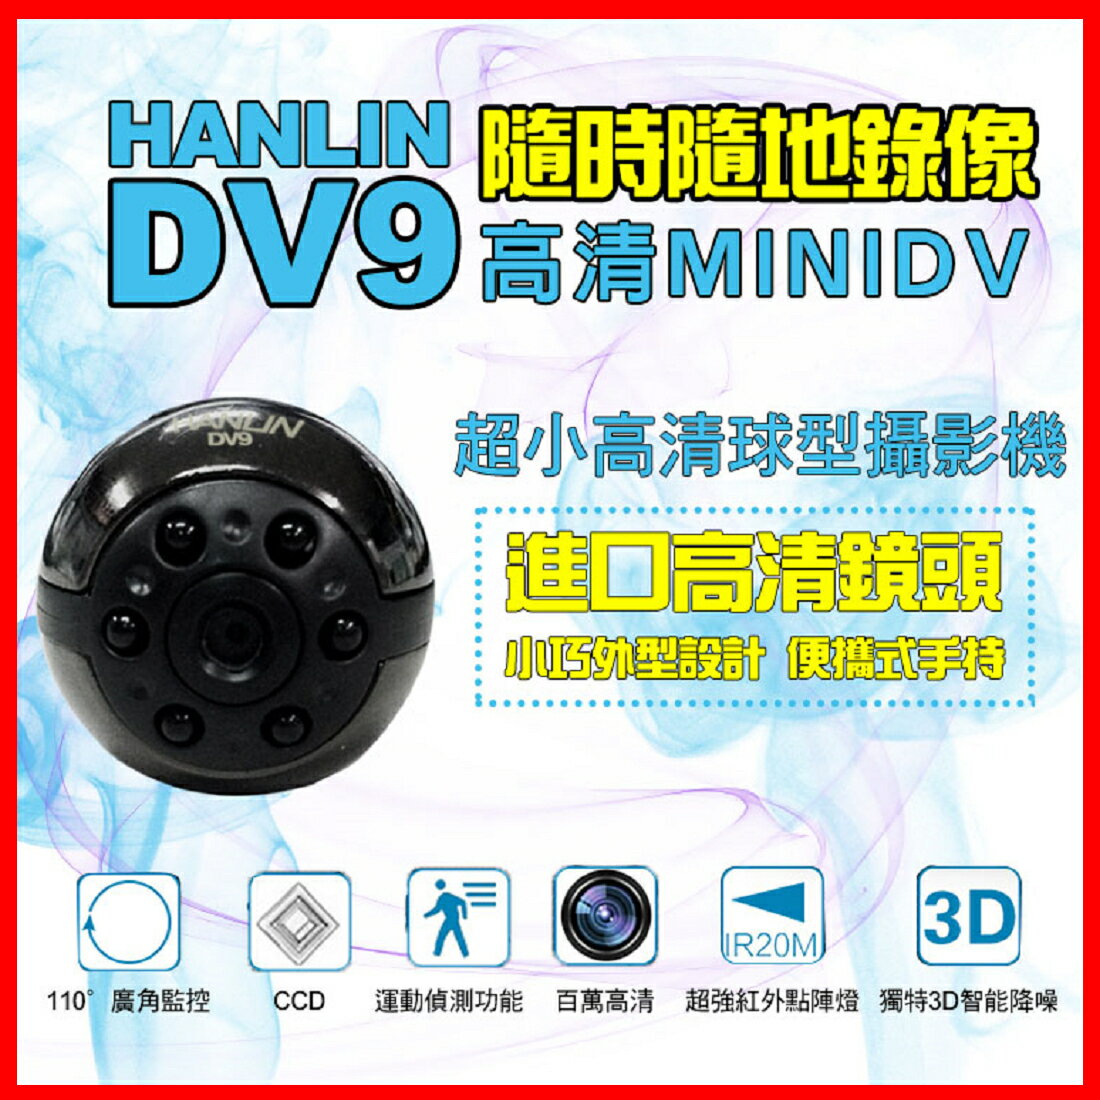 HANLIN-DV9 超小高清1080P球型攝影機 夜視 密錄器 微型攝影機 針孔攝影機 行車紀錄器 蒐證監視器【凱益】